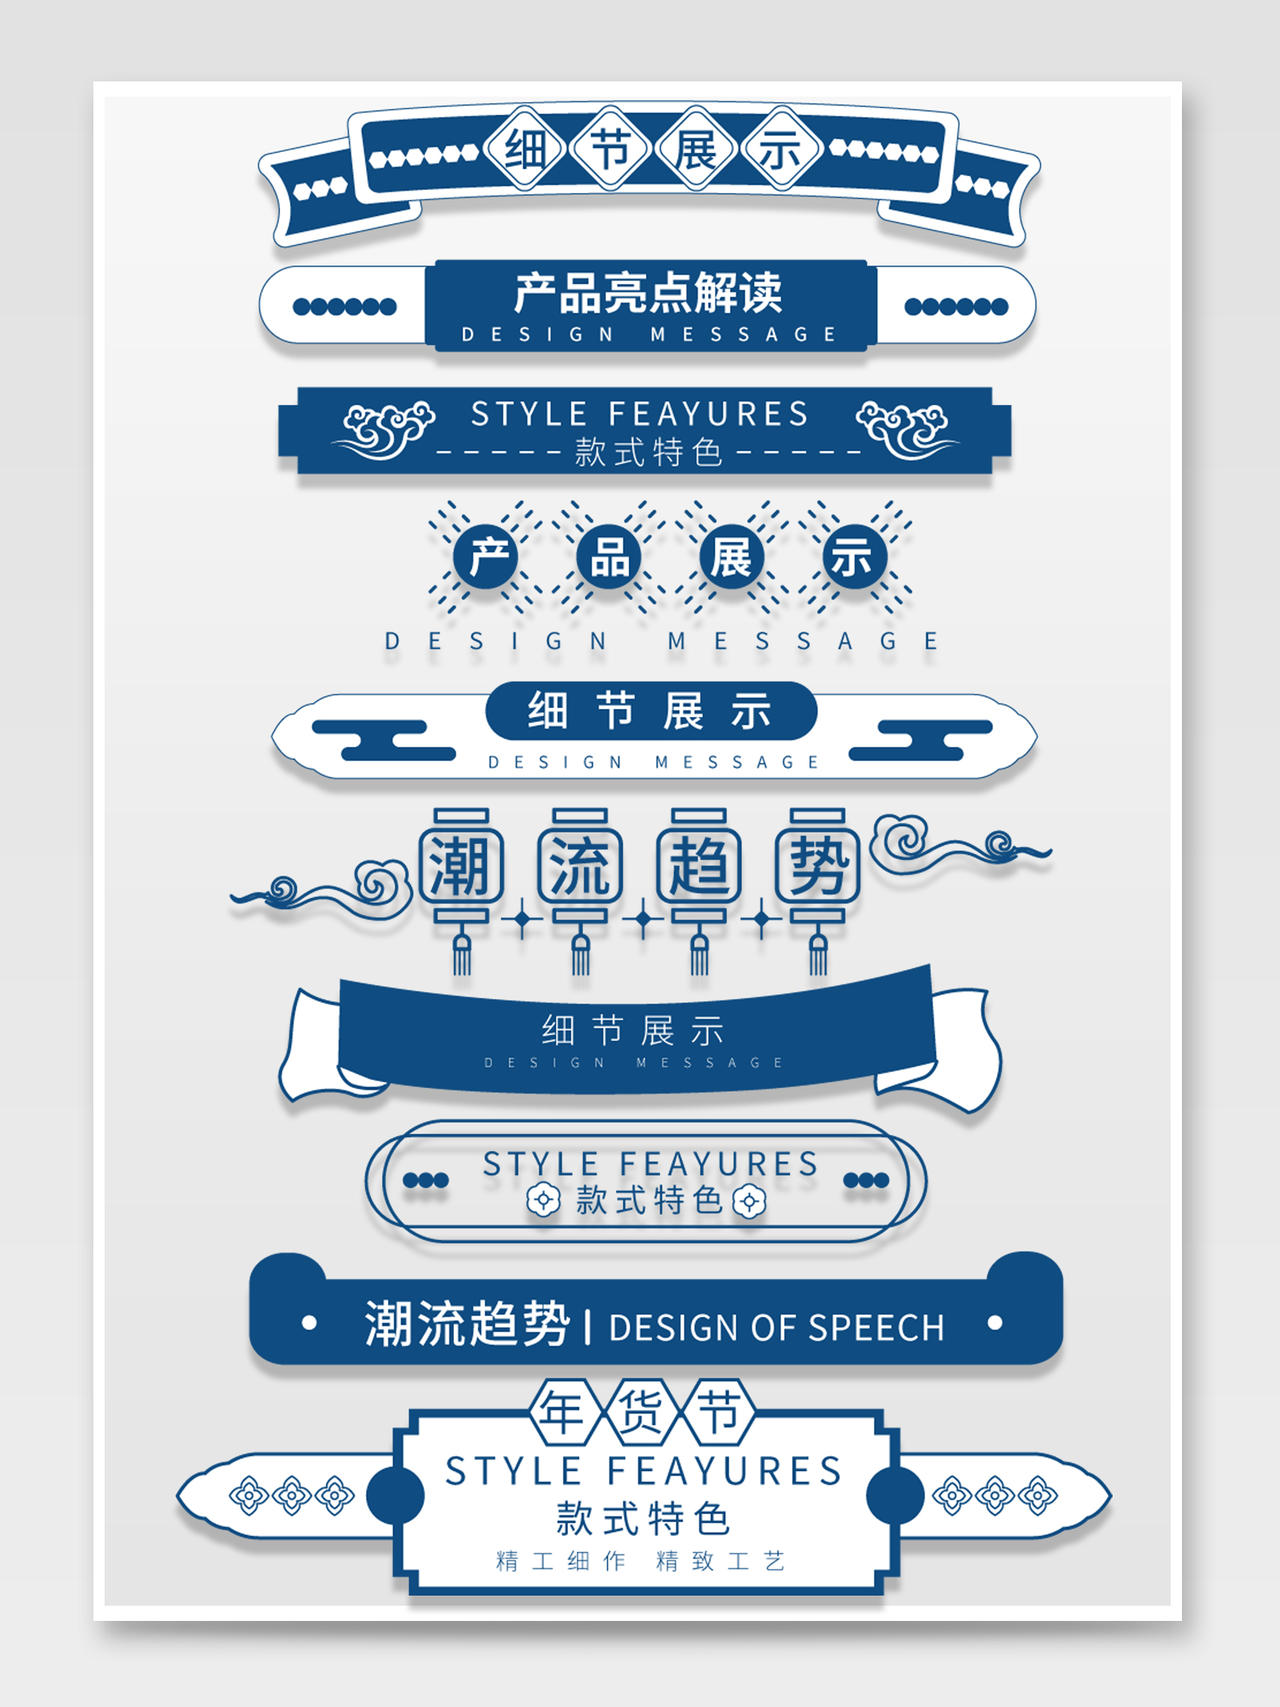 蓝色手绘古风中国风年货节节日促销电商年货节导航标题栏分栏